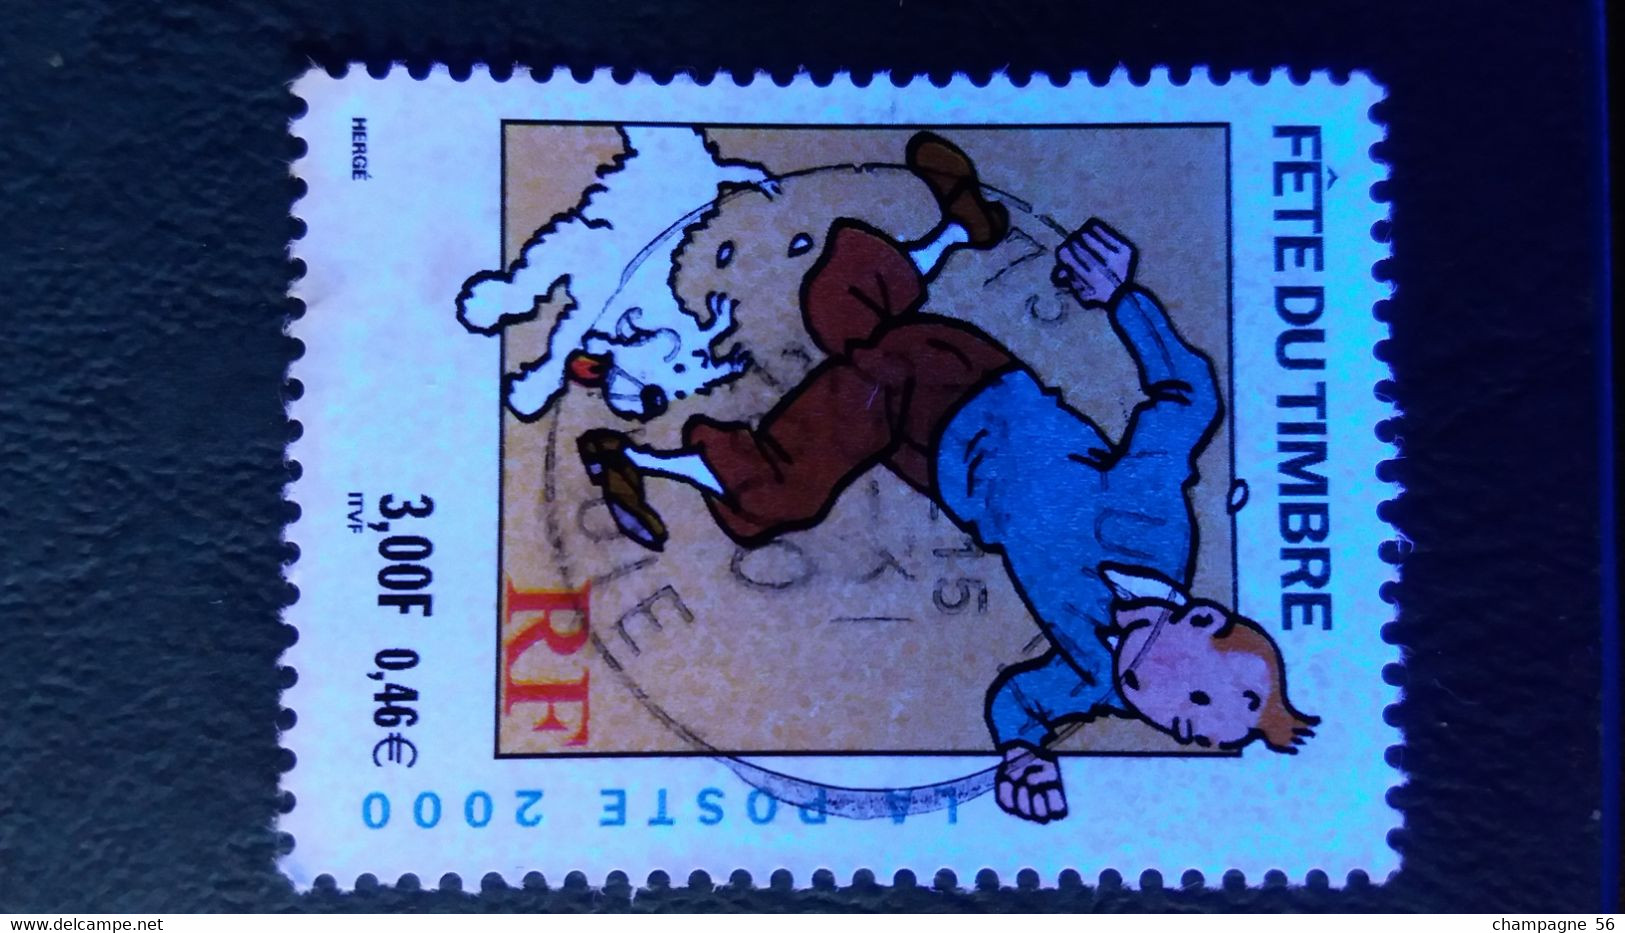 FRANCE 2000 N° 3303a 13 1/2 X 13  OBLITERE 25.31.2000 / COULEUR NUANCE ET DEPLACER / LAMPE U.V. / SCANNE 3 PAS A VENDRE - Used Stamps